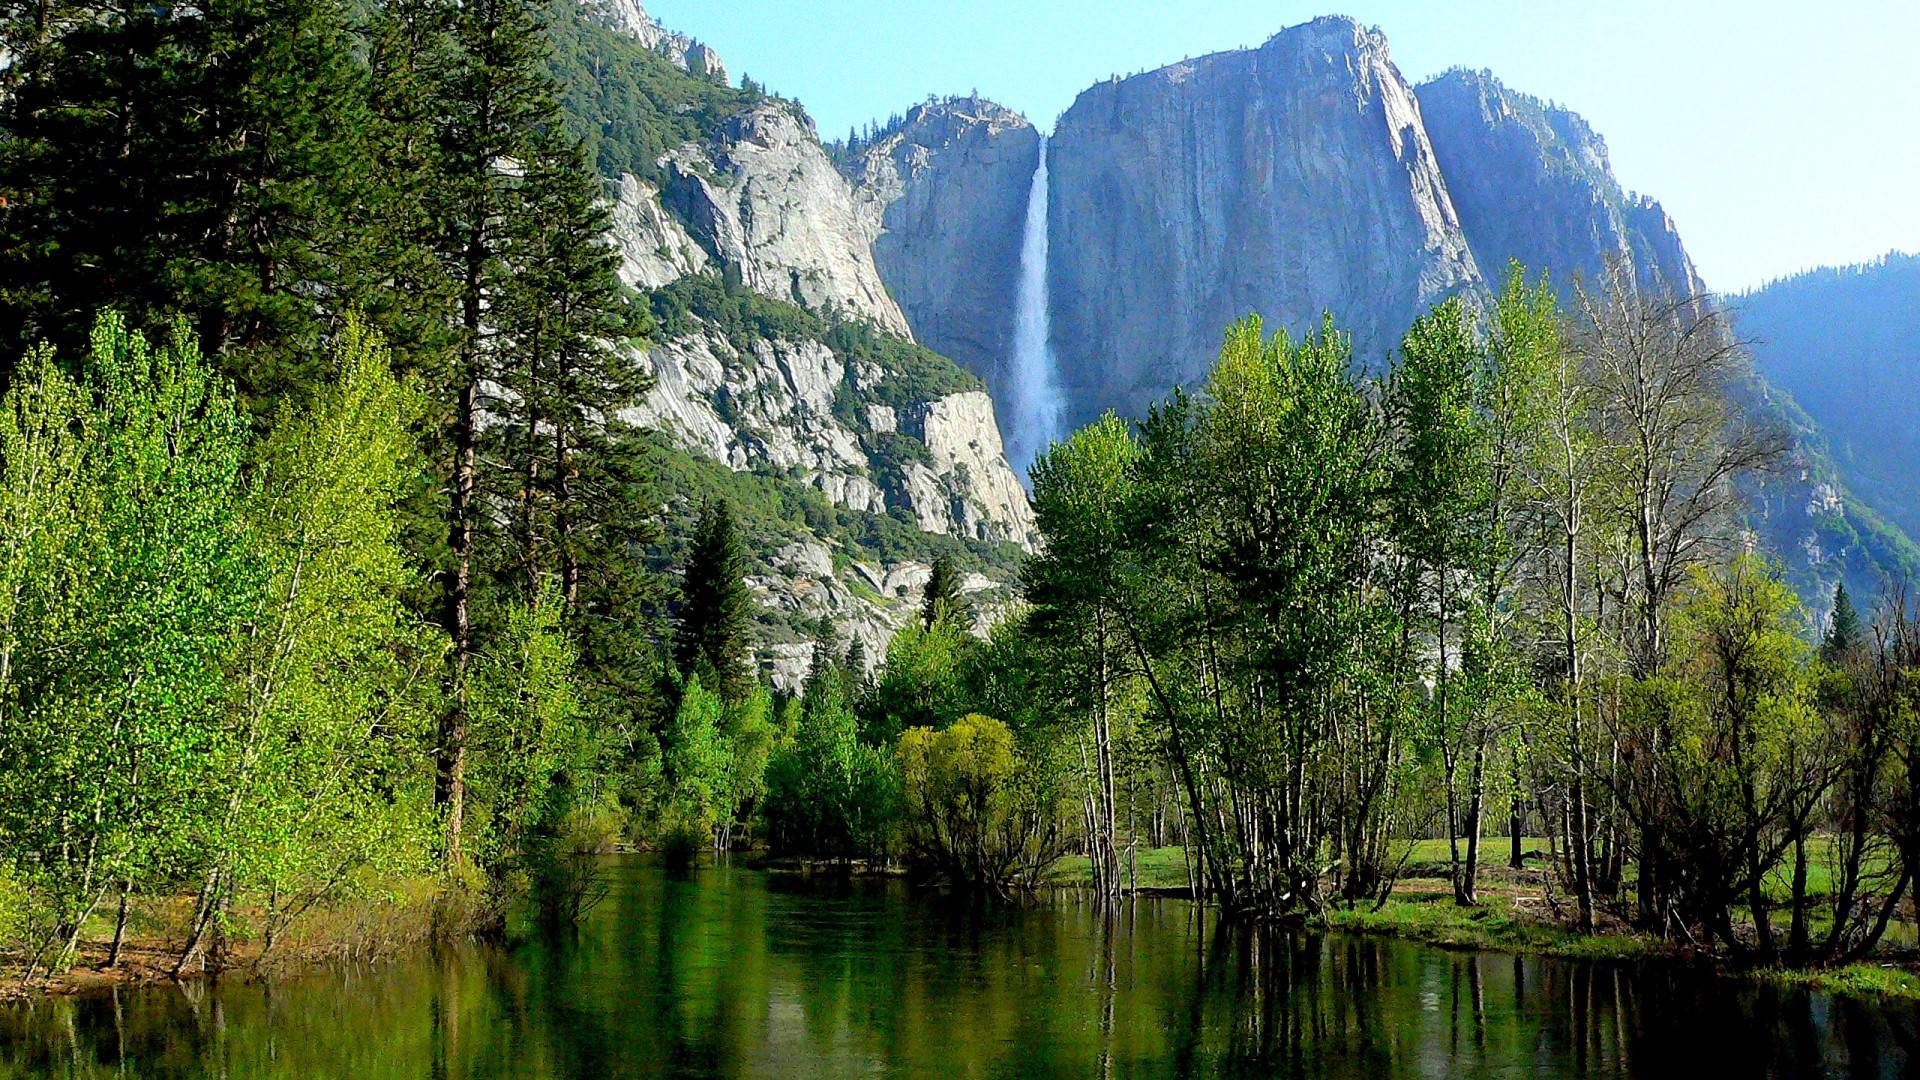 优胜美地国家公园，内华达山脉，默塞德河，青山，树，岩石，绿水，瀑布，自然风景桌面壁纸